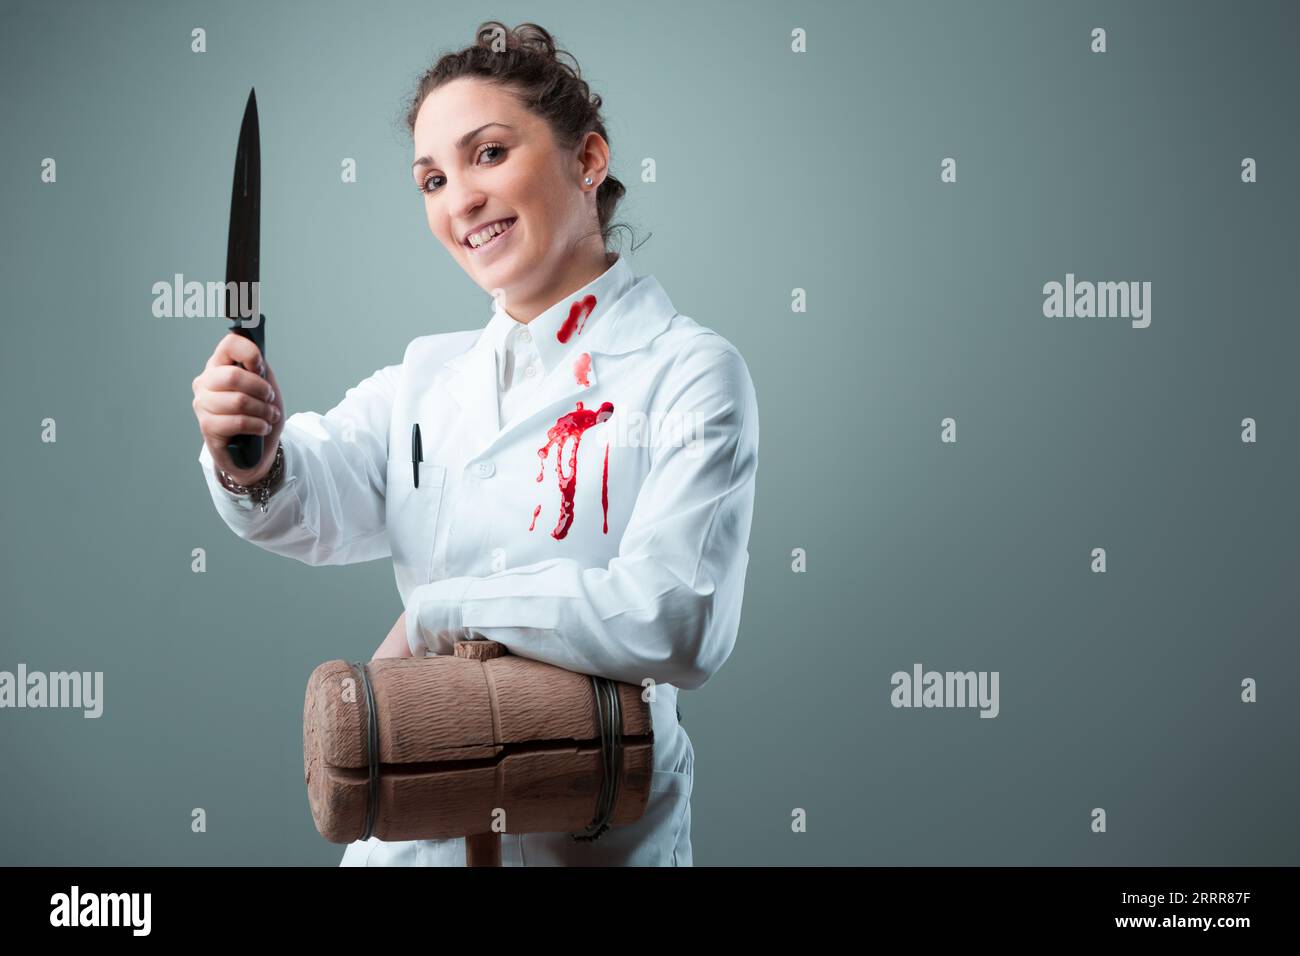 Sosteniendo mazo de madera y cuchillos, una mujer aparentemente benigna de blanco se vuelve inquietante. Simbolizando individuos poco éticos haciéndose pasar por científicos, el im Foto de stock